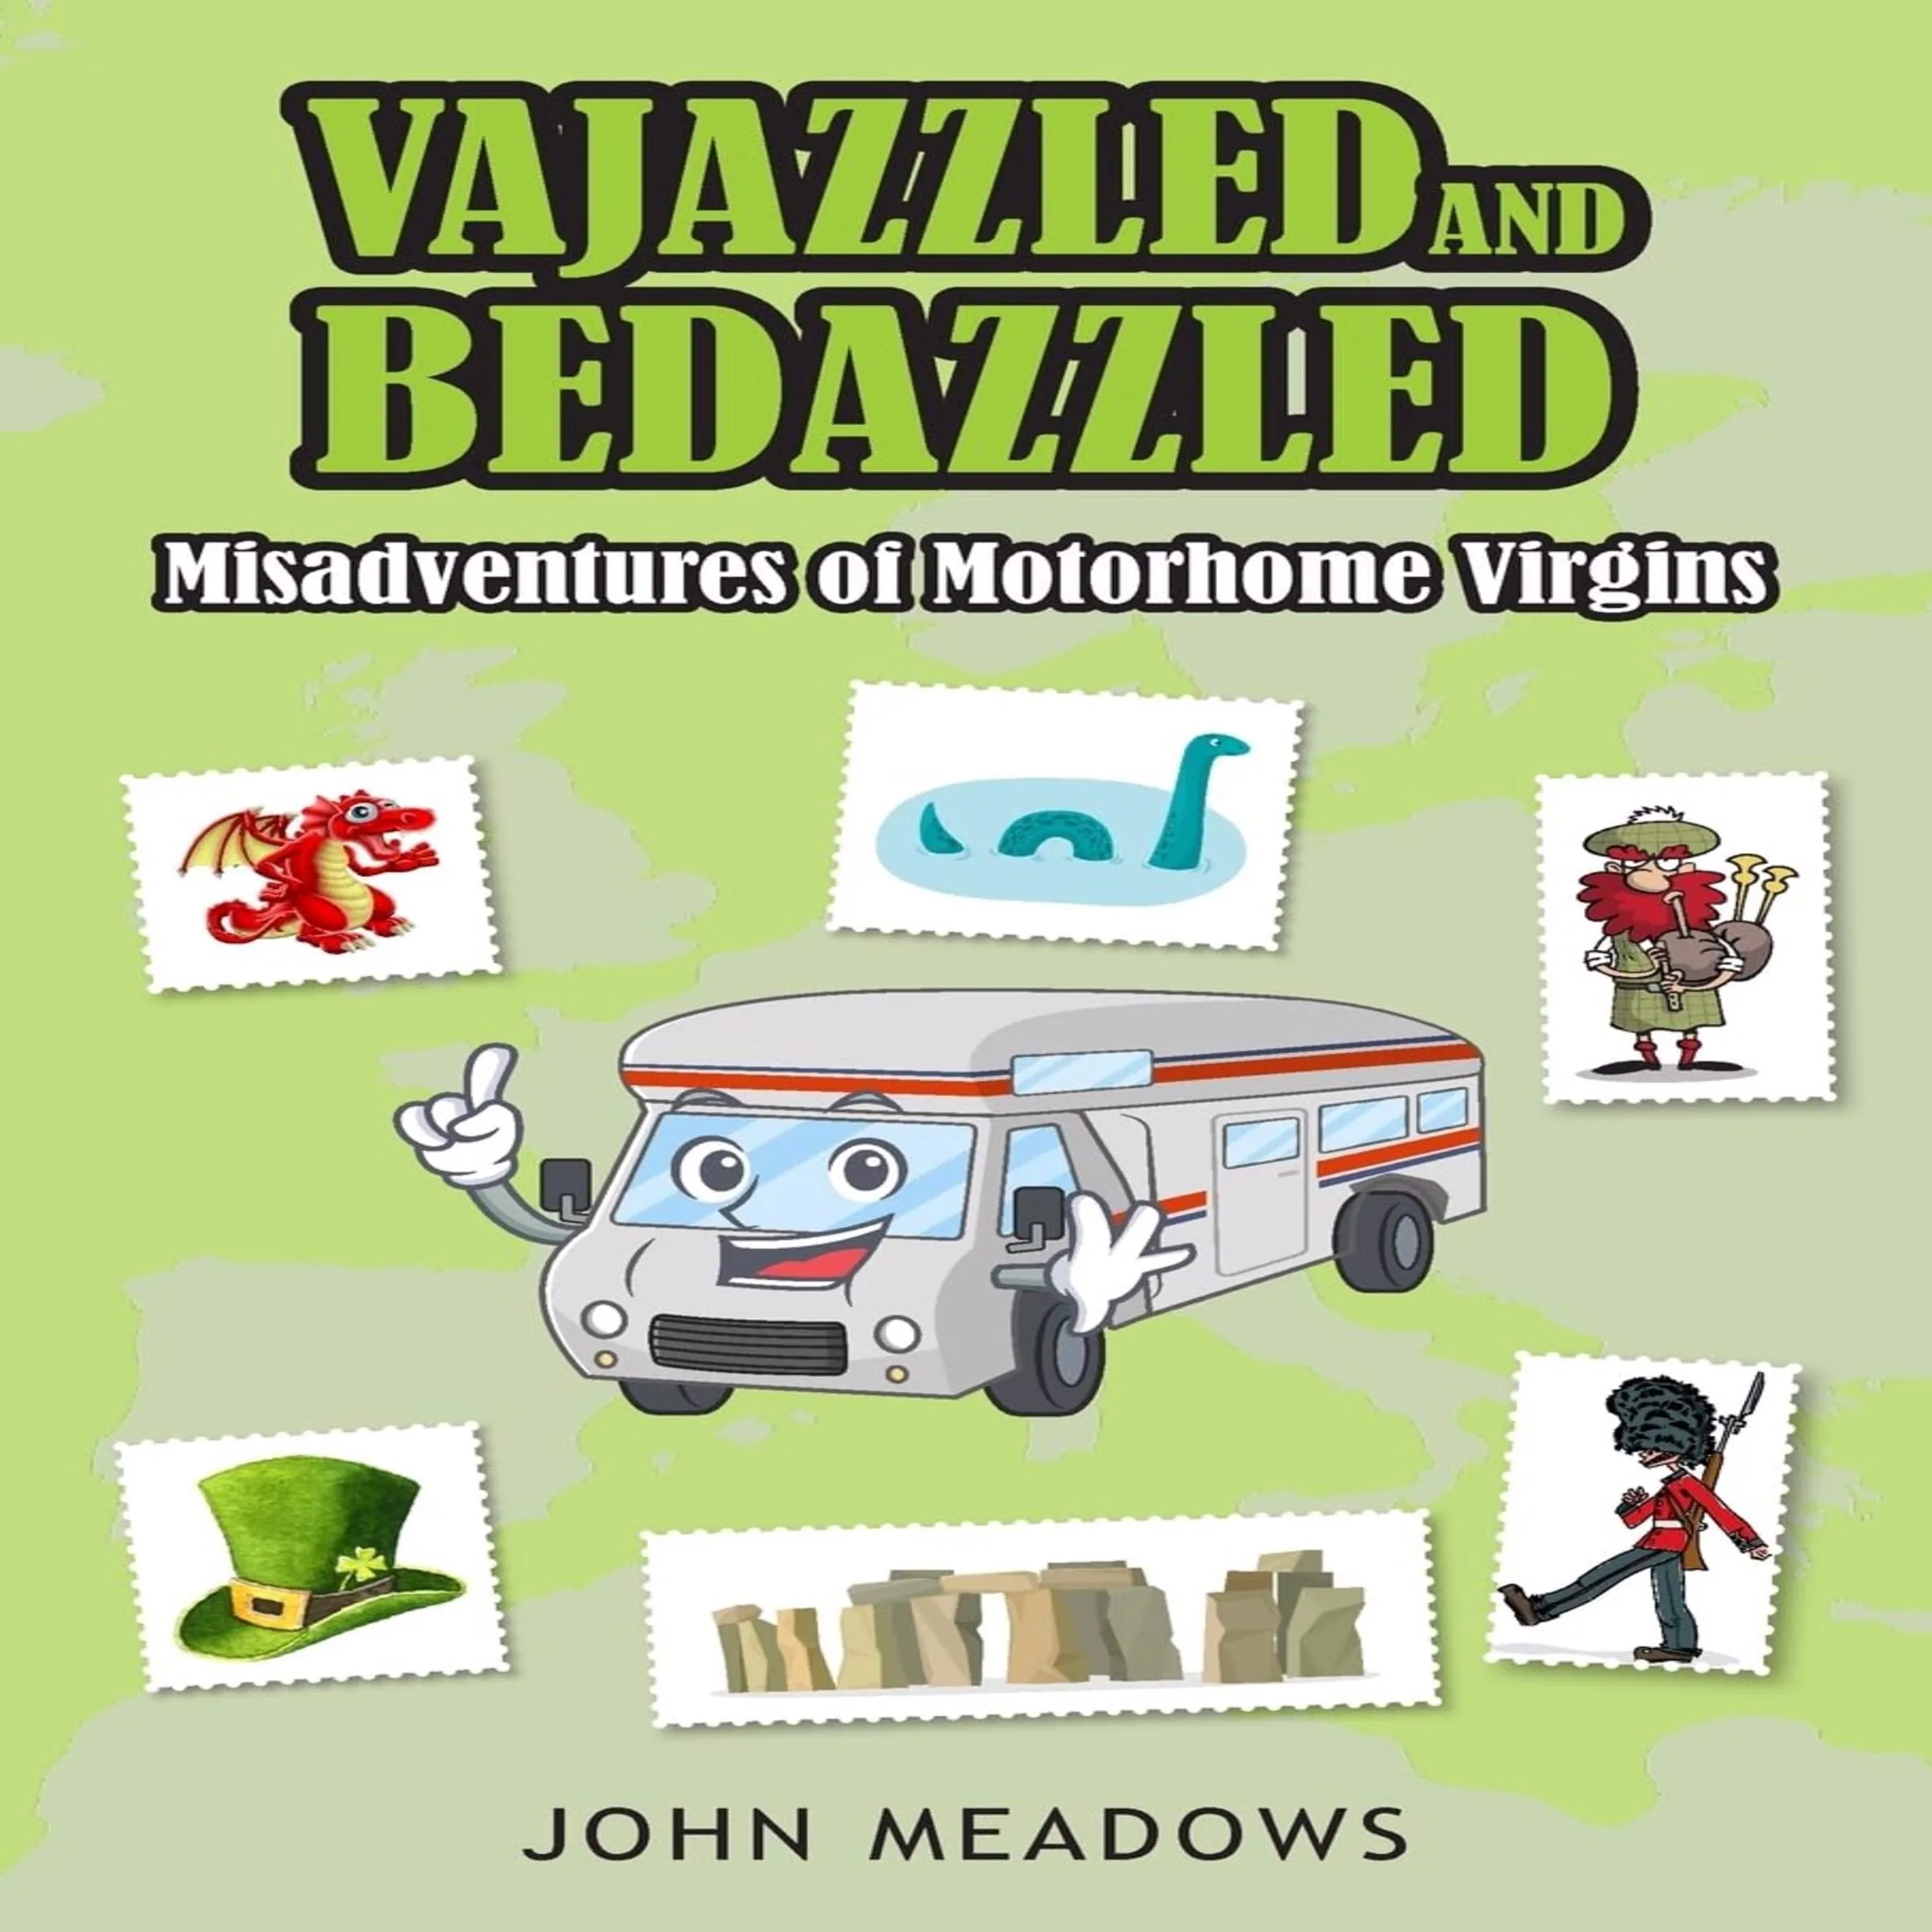 Vajazzled & Bedazzled: Misadventures of Motorhome Virgins by John Meadows Audiobook